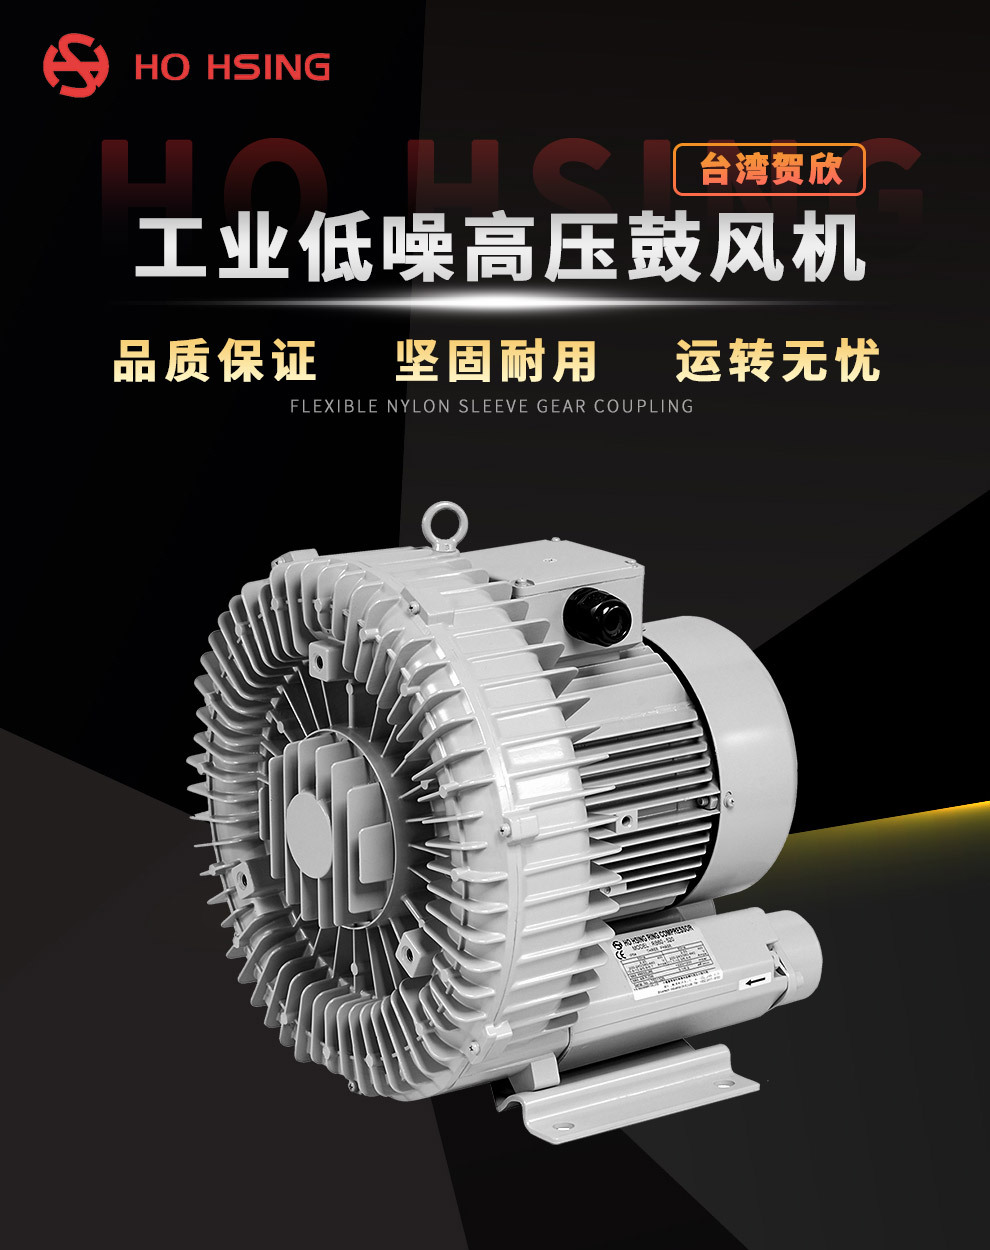 风量大台湾贺欣高压鼓风机 RB40-520 Ho Hsing 机械工业通用鼓风机 轻量化低噪音示例图1